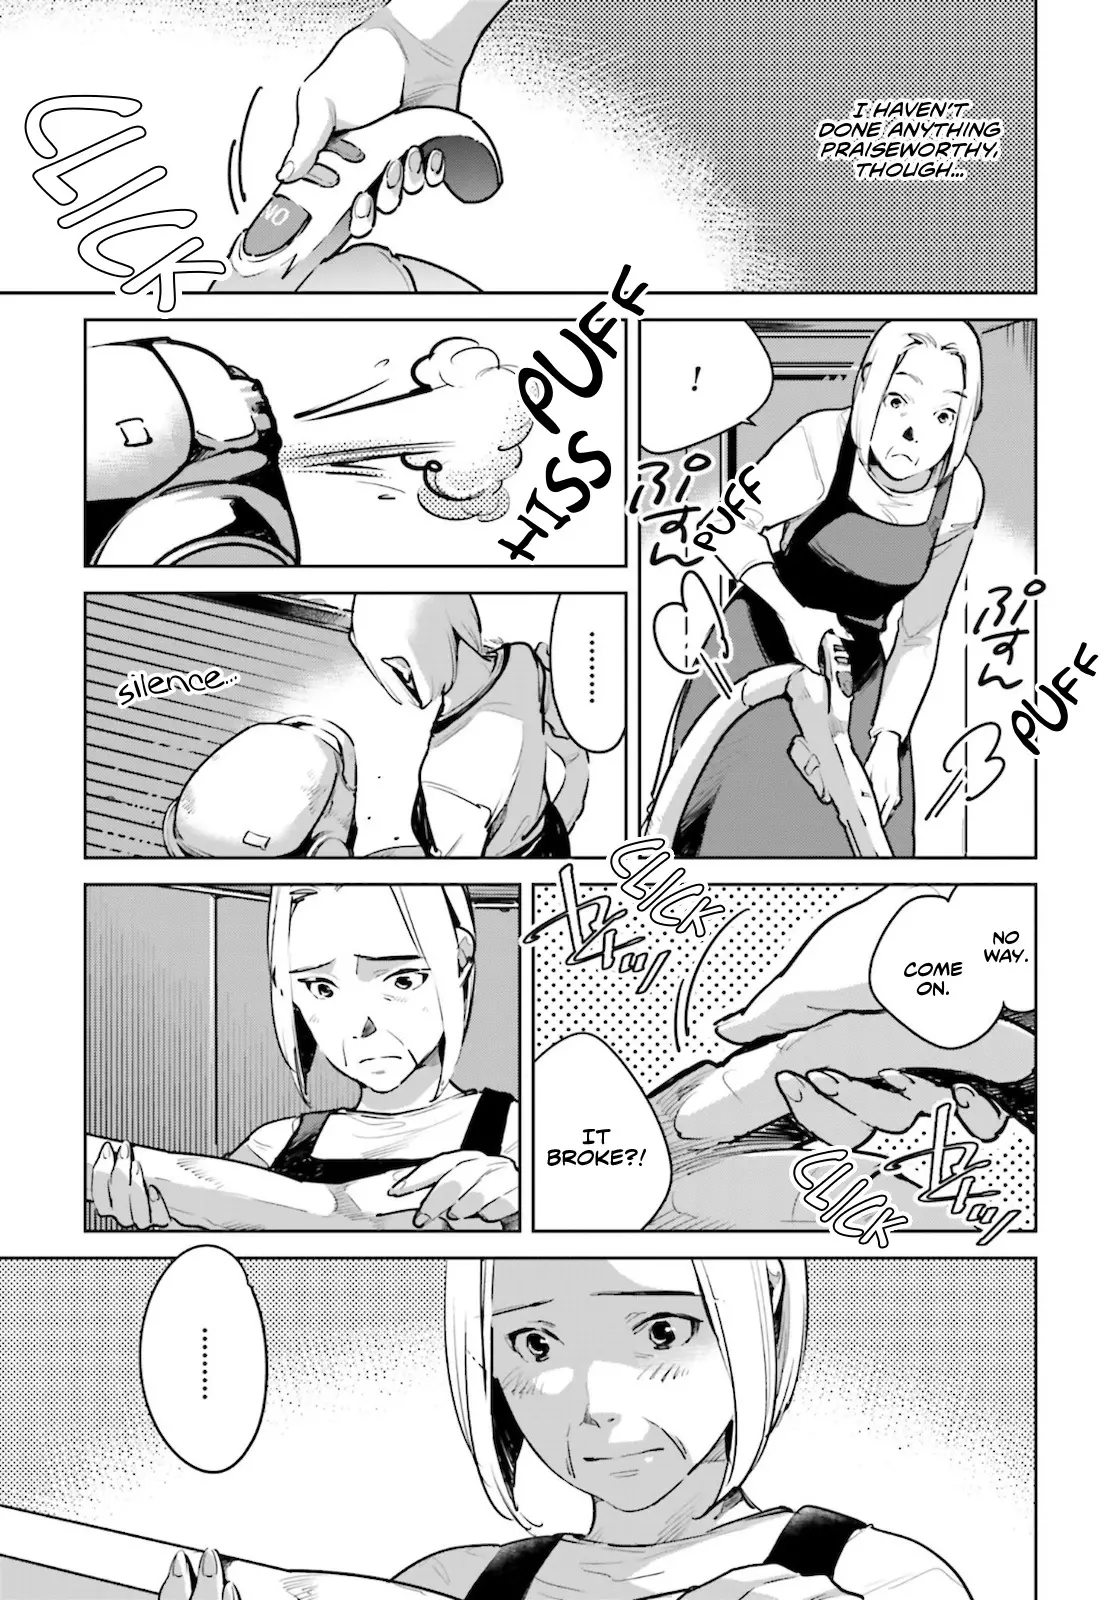 Okashiratsuki - 22 page 18-6fc58dac